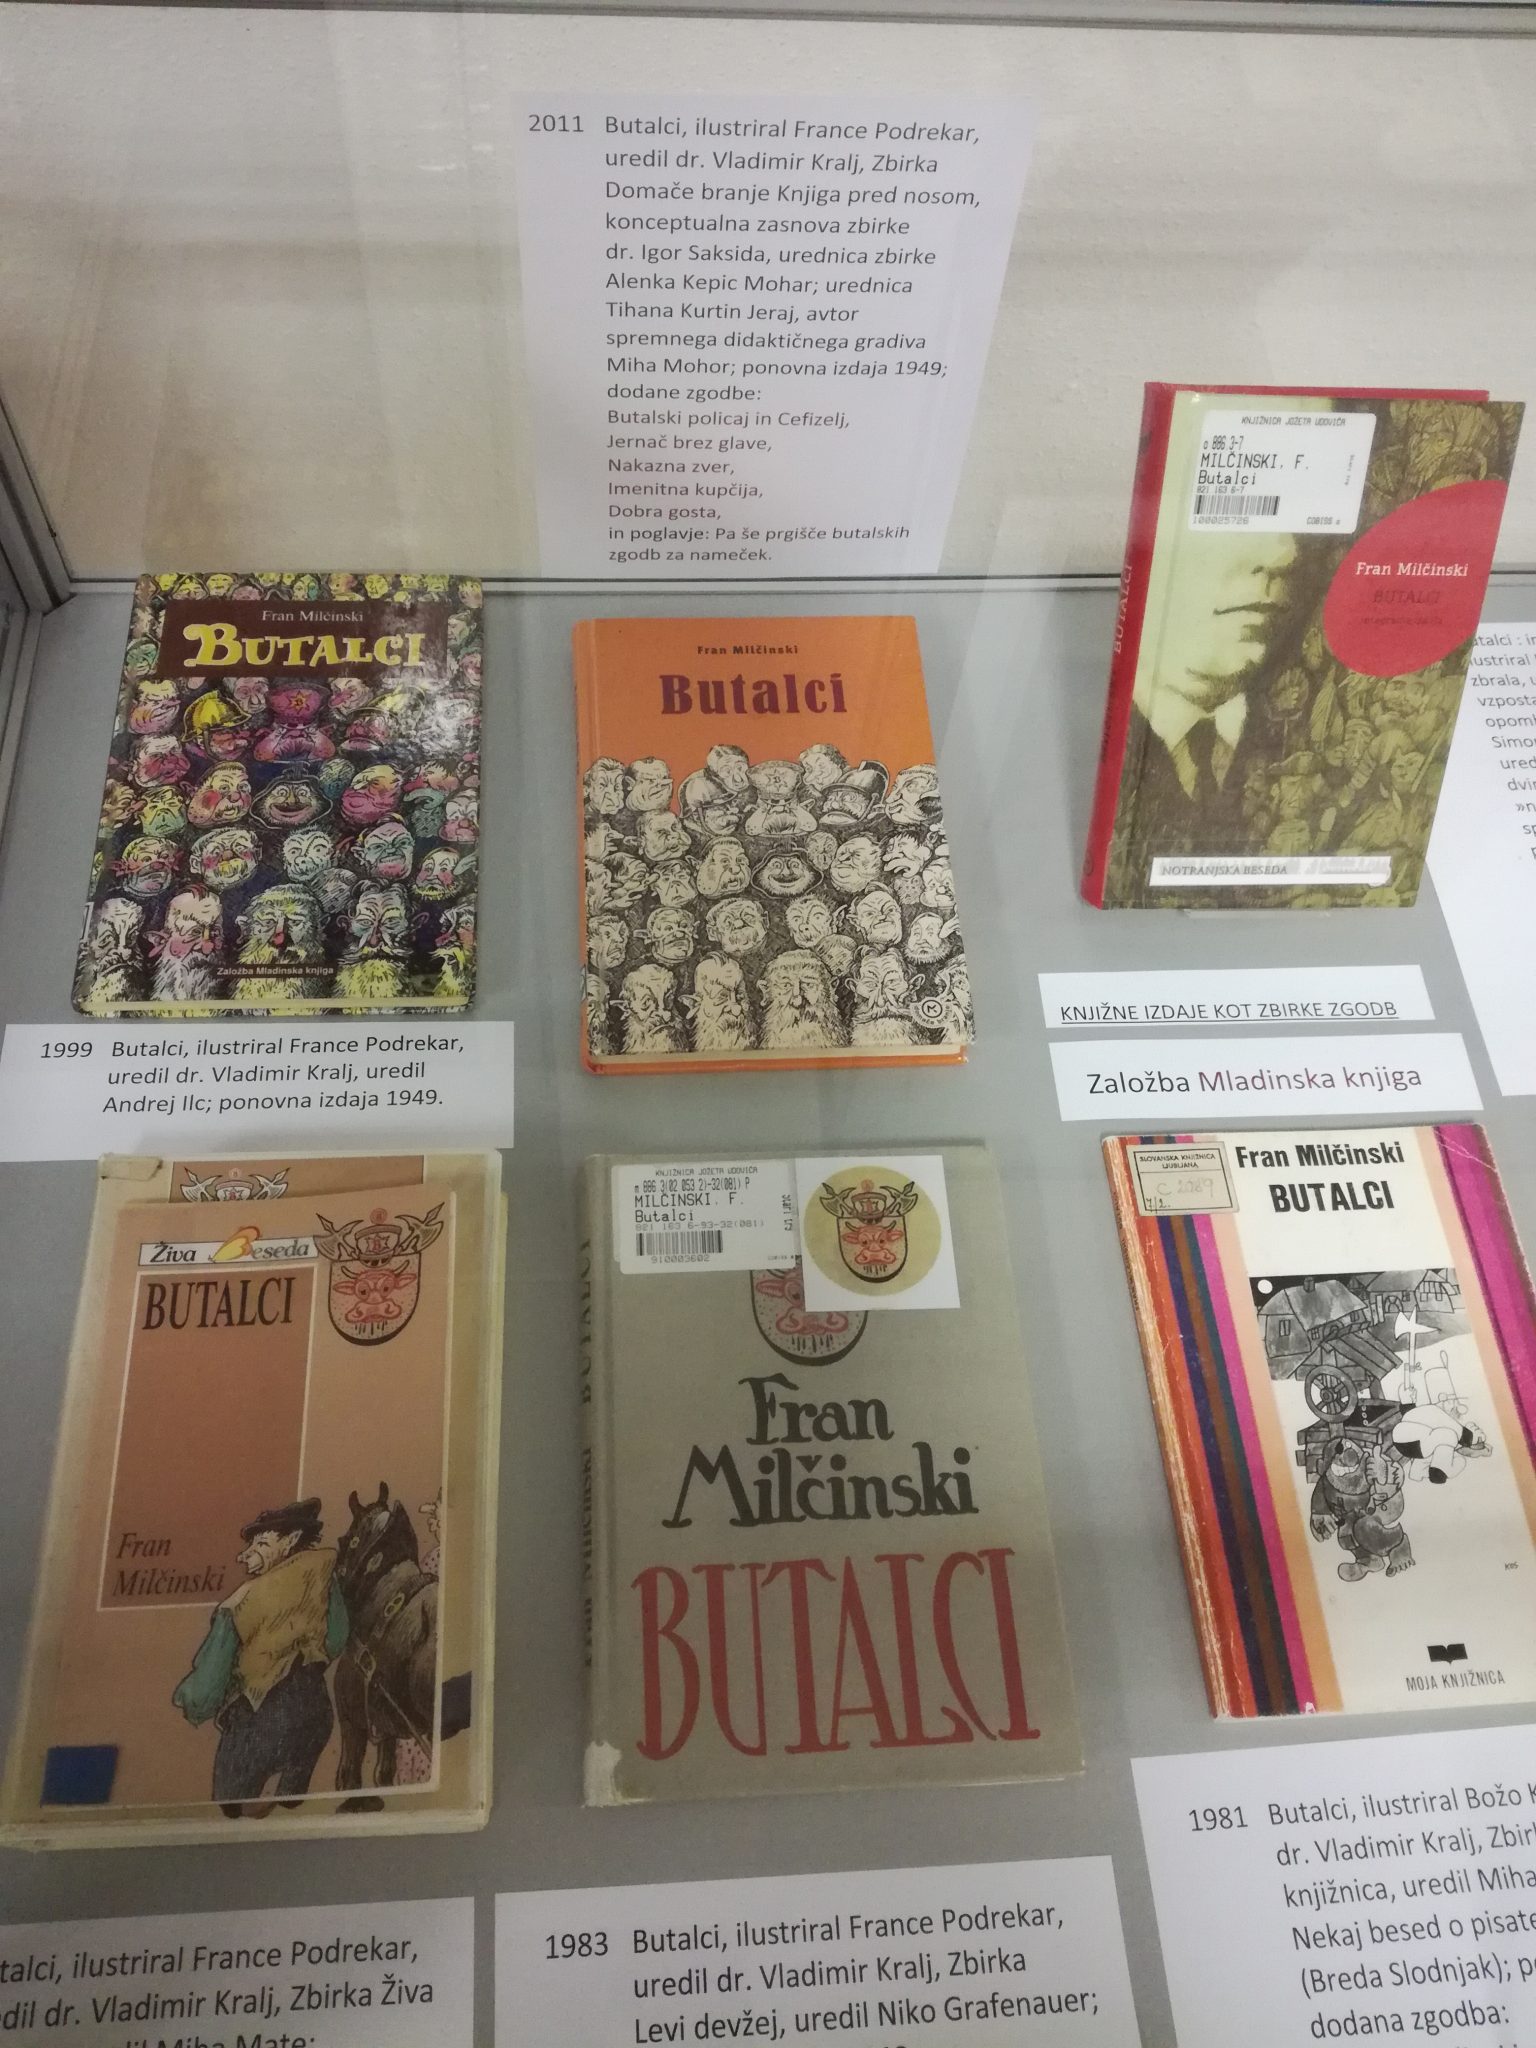 IMG 20170928 194452 - Butalci - razstava knjižnih izdaj ob 150-letnici rojstva Frana Milčinskega